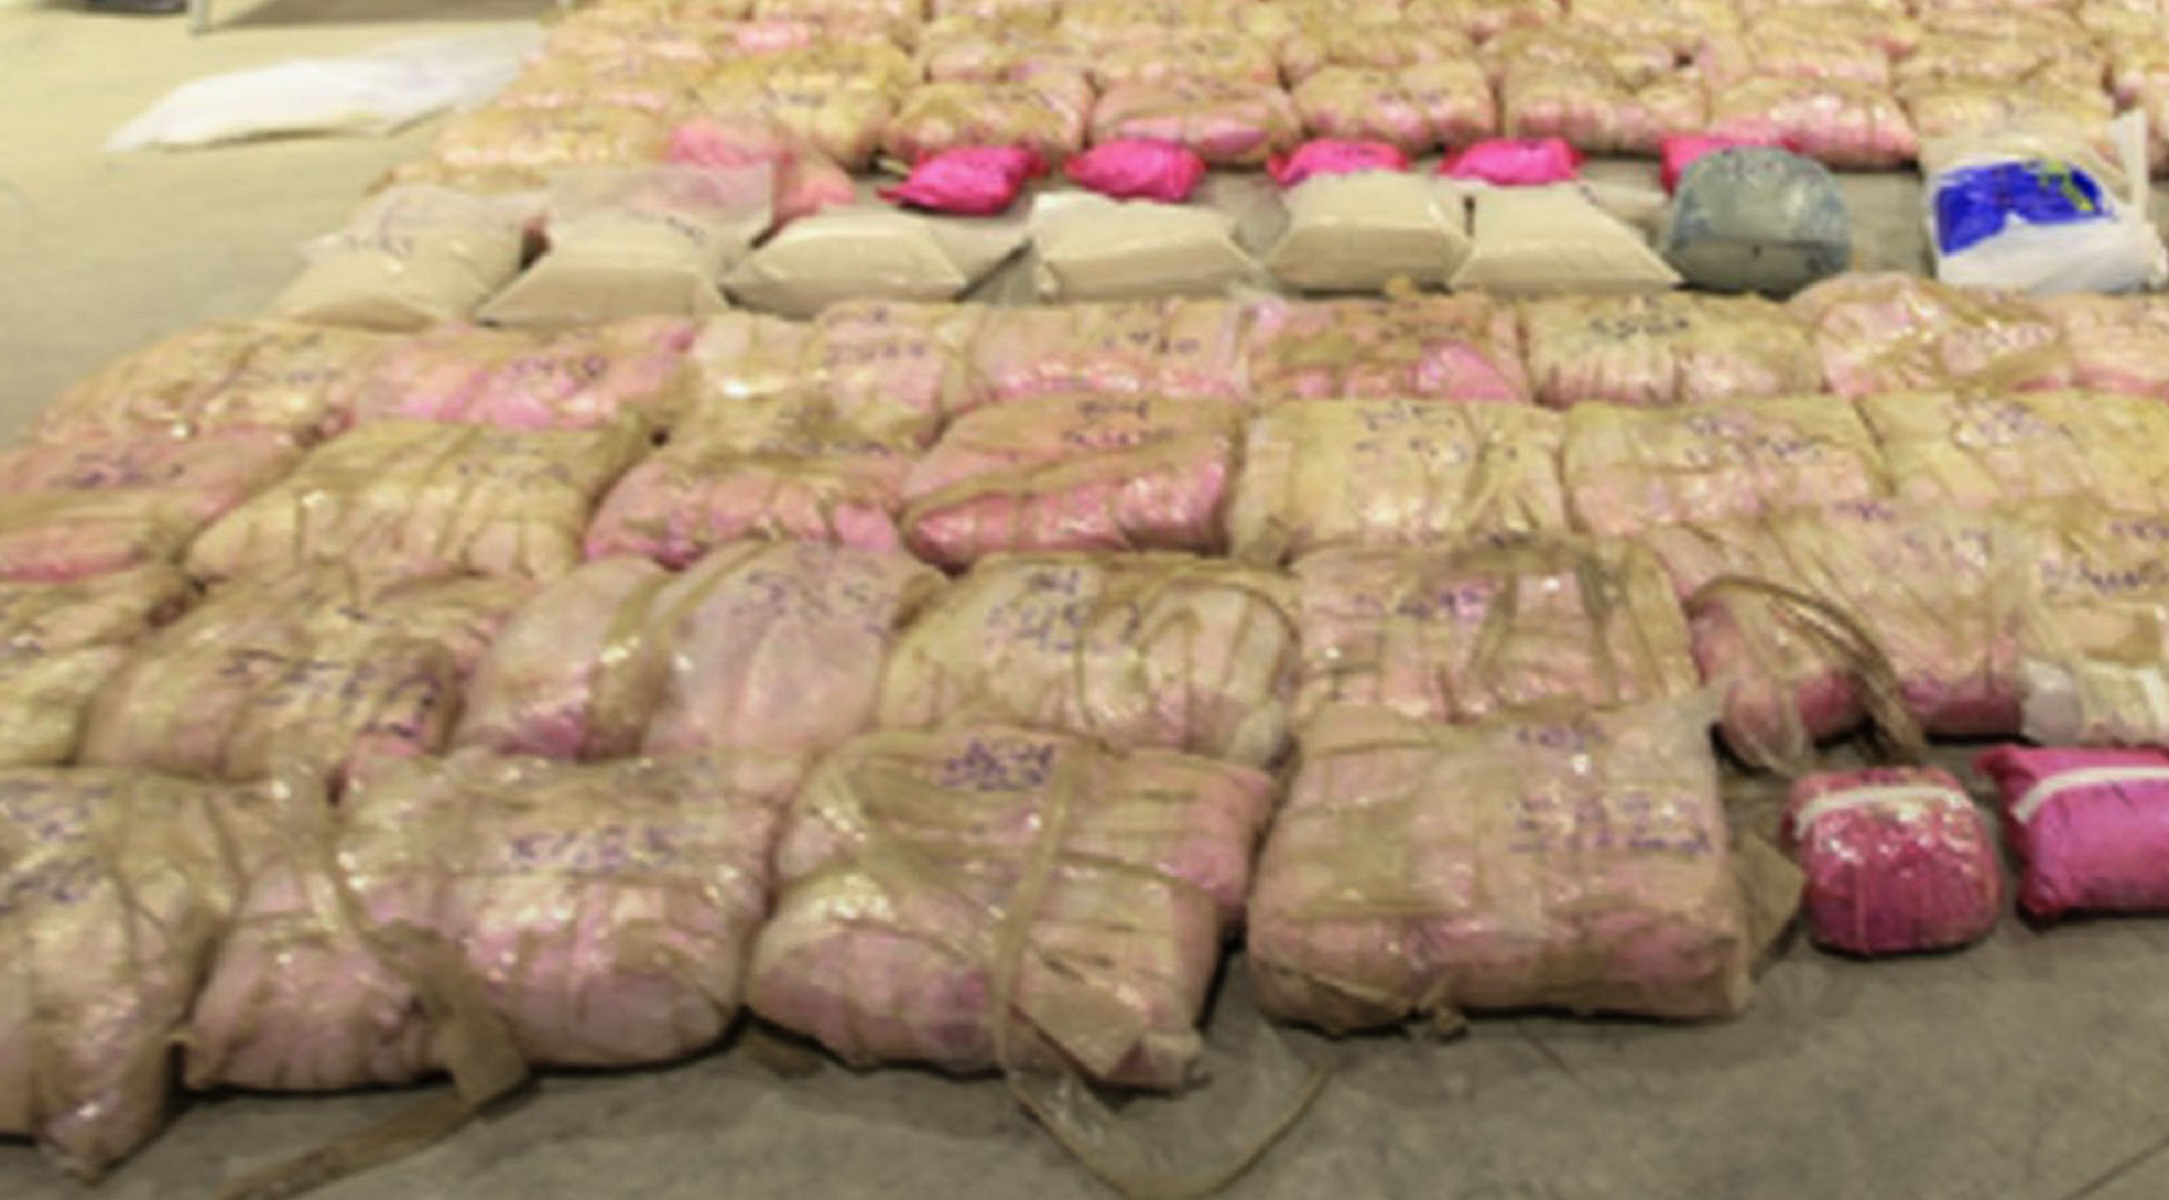 400 κιλά ηρωίνης βρέθηκαν κρυμμένα σε εμπορευματοκιβώτιο! Ήταν κάτω από πετσέτες και μπουρνούζια!